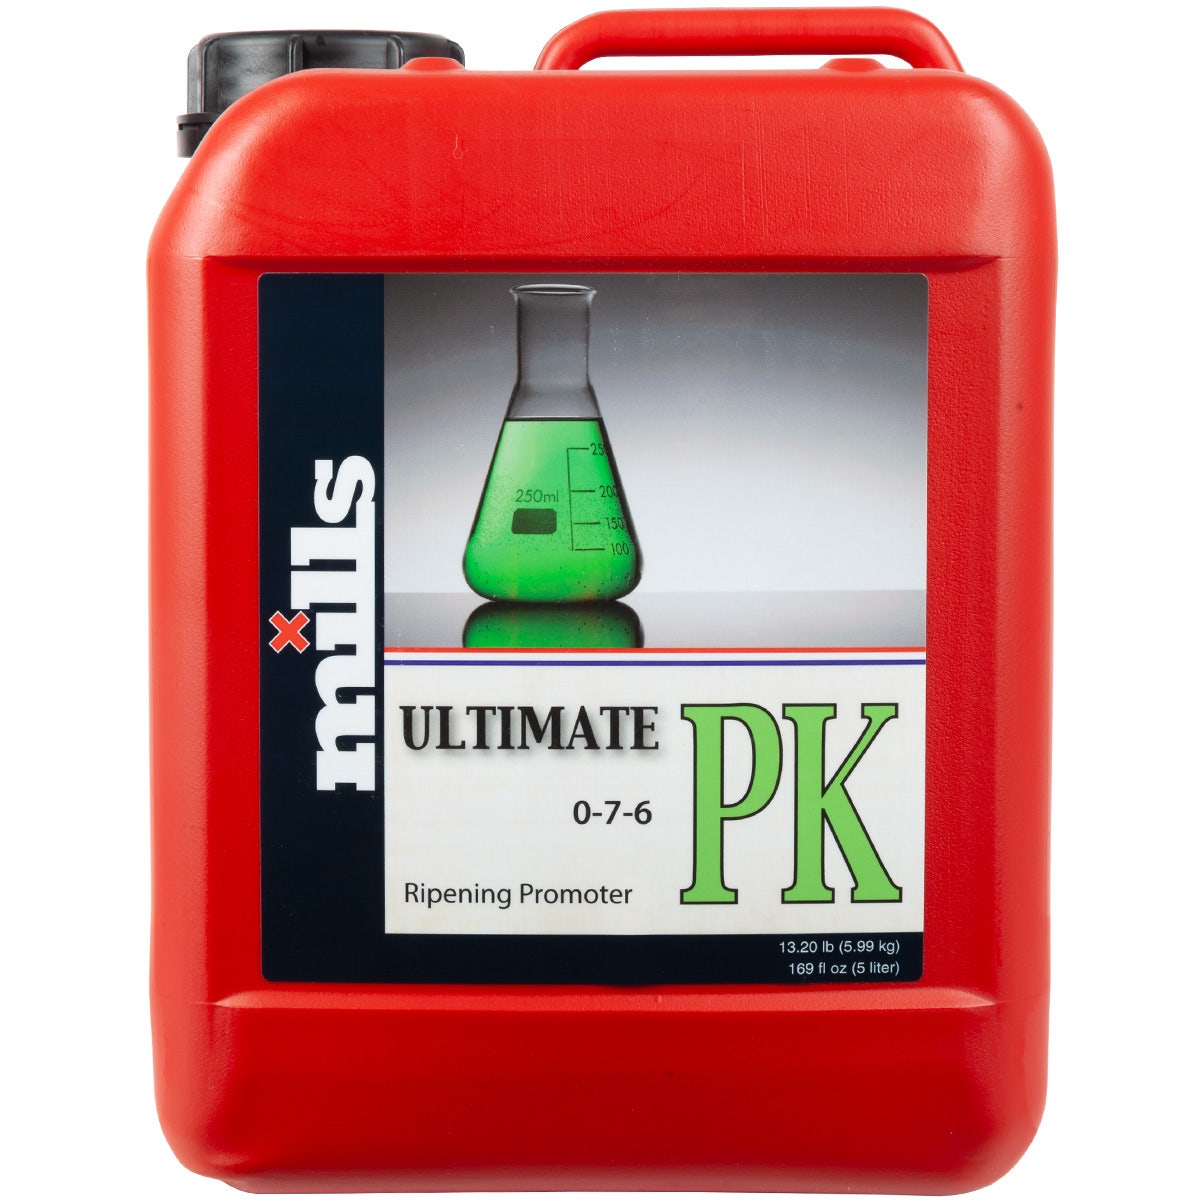 Mills Nutrients - Ultimate PK